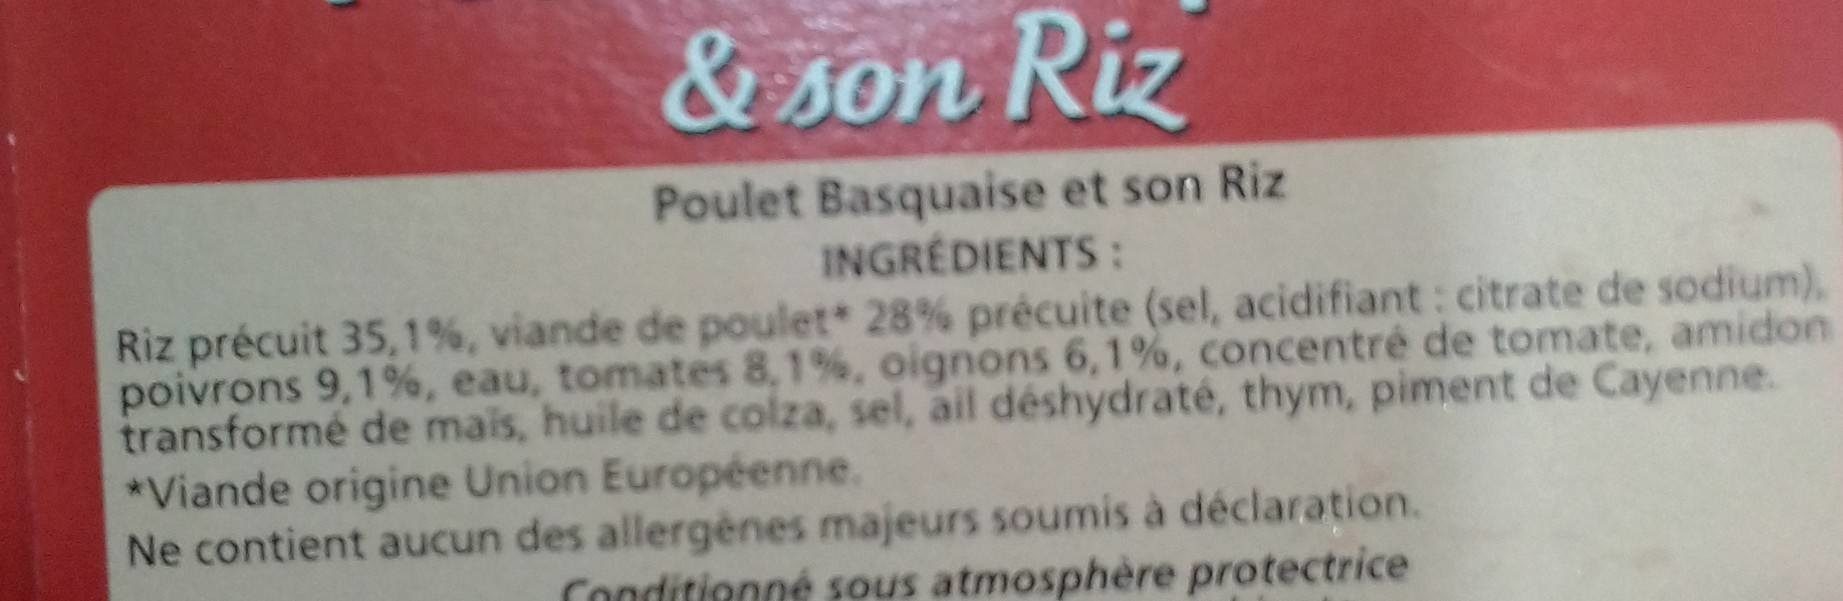 Poulet Basquaise et son riz - Ingredients - fr